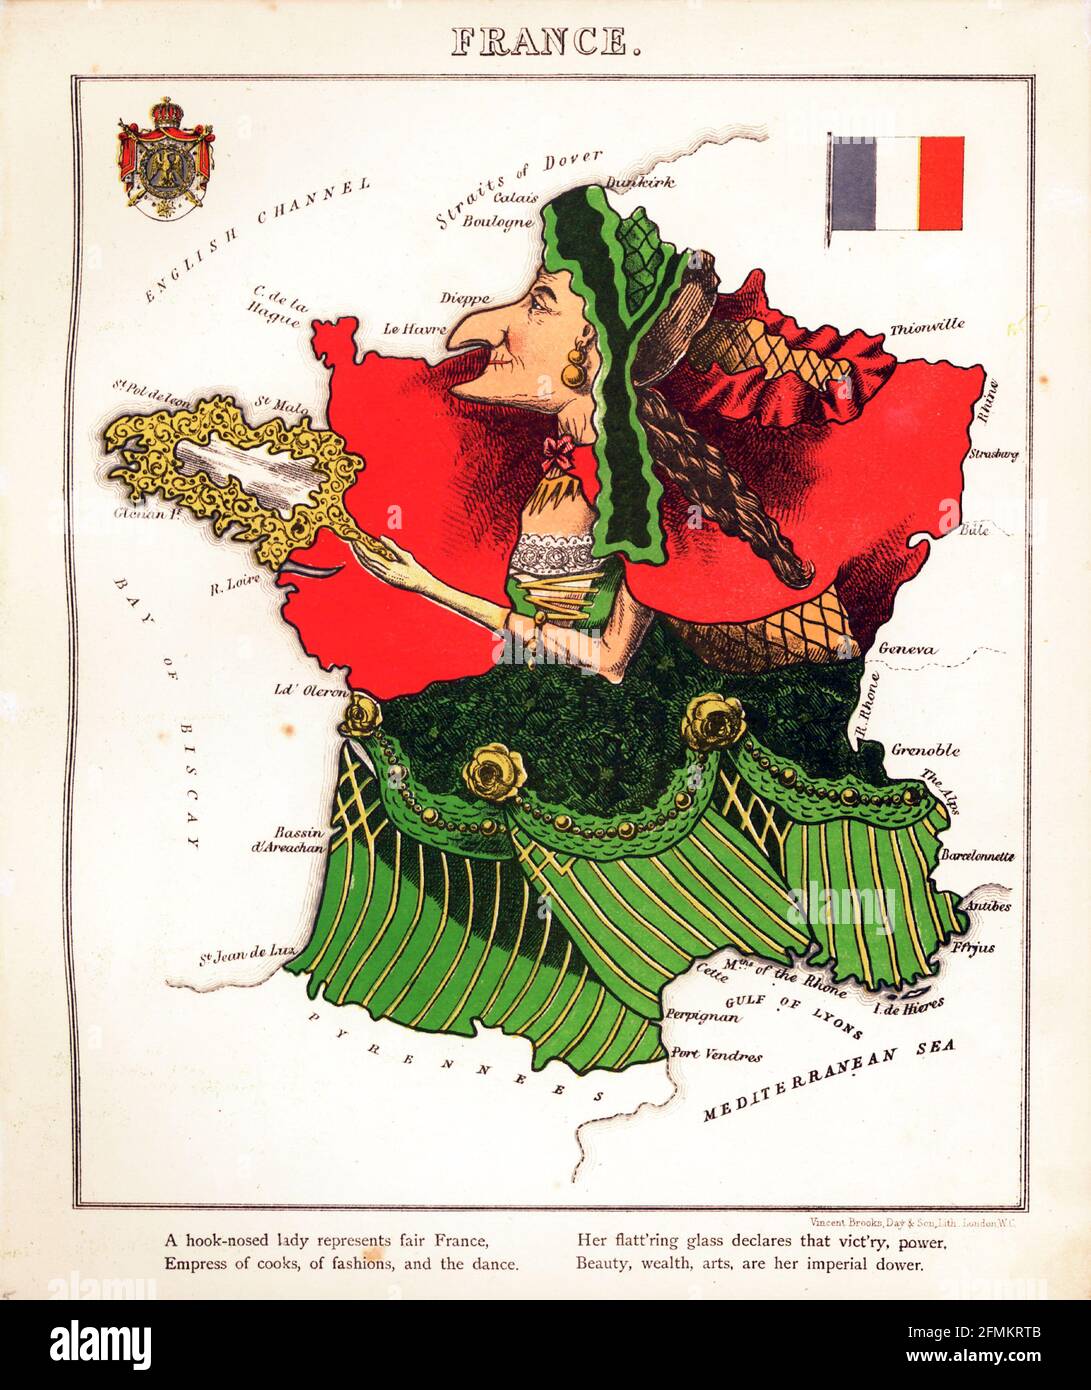 Francia – divertimento geografico. Mappa satirica / cartografica illustrata. Pubblicato a Londra dalla ditta di Hodder e Stoughton nel 1869. Foto Stock